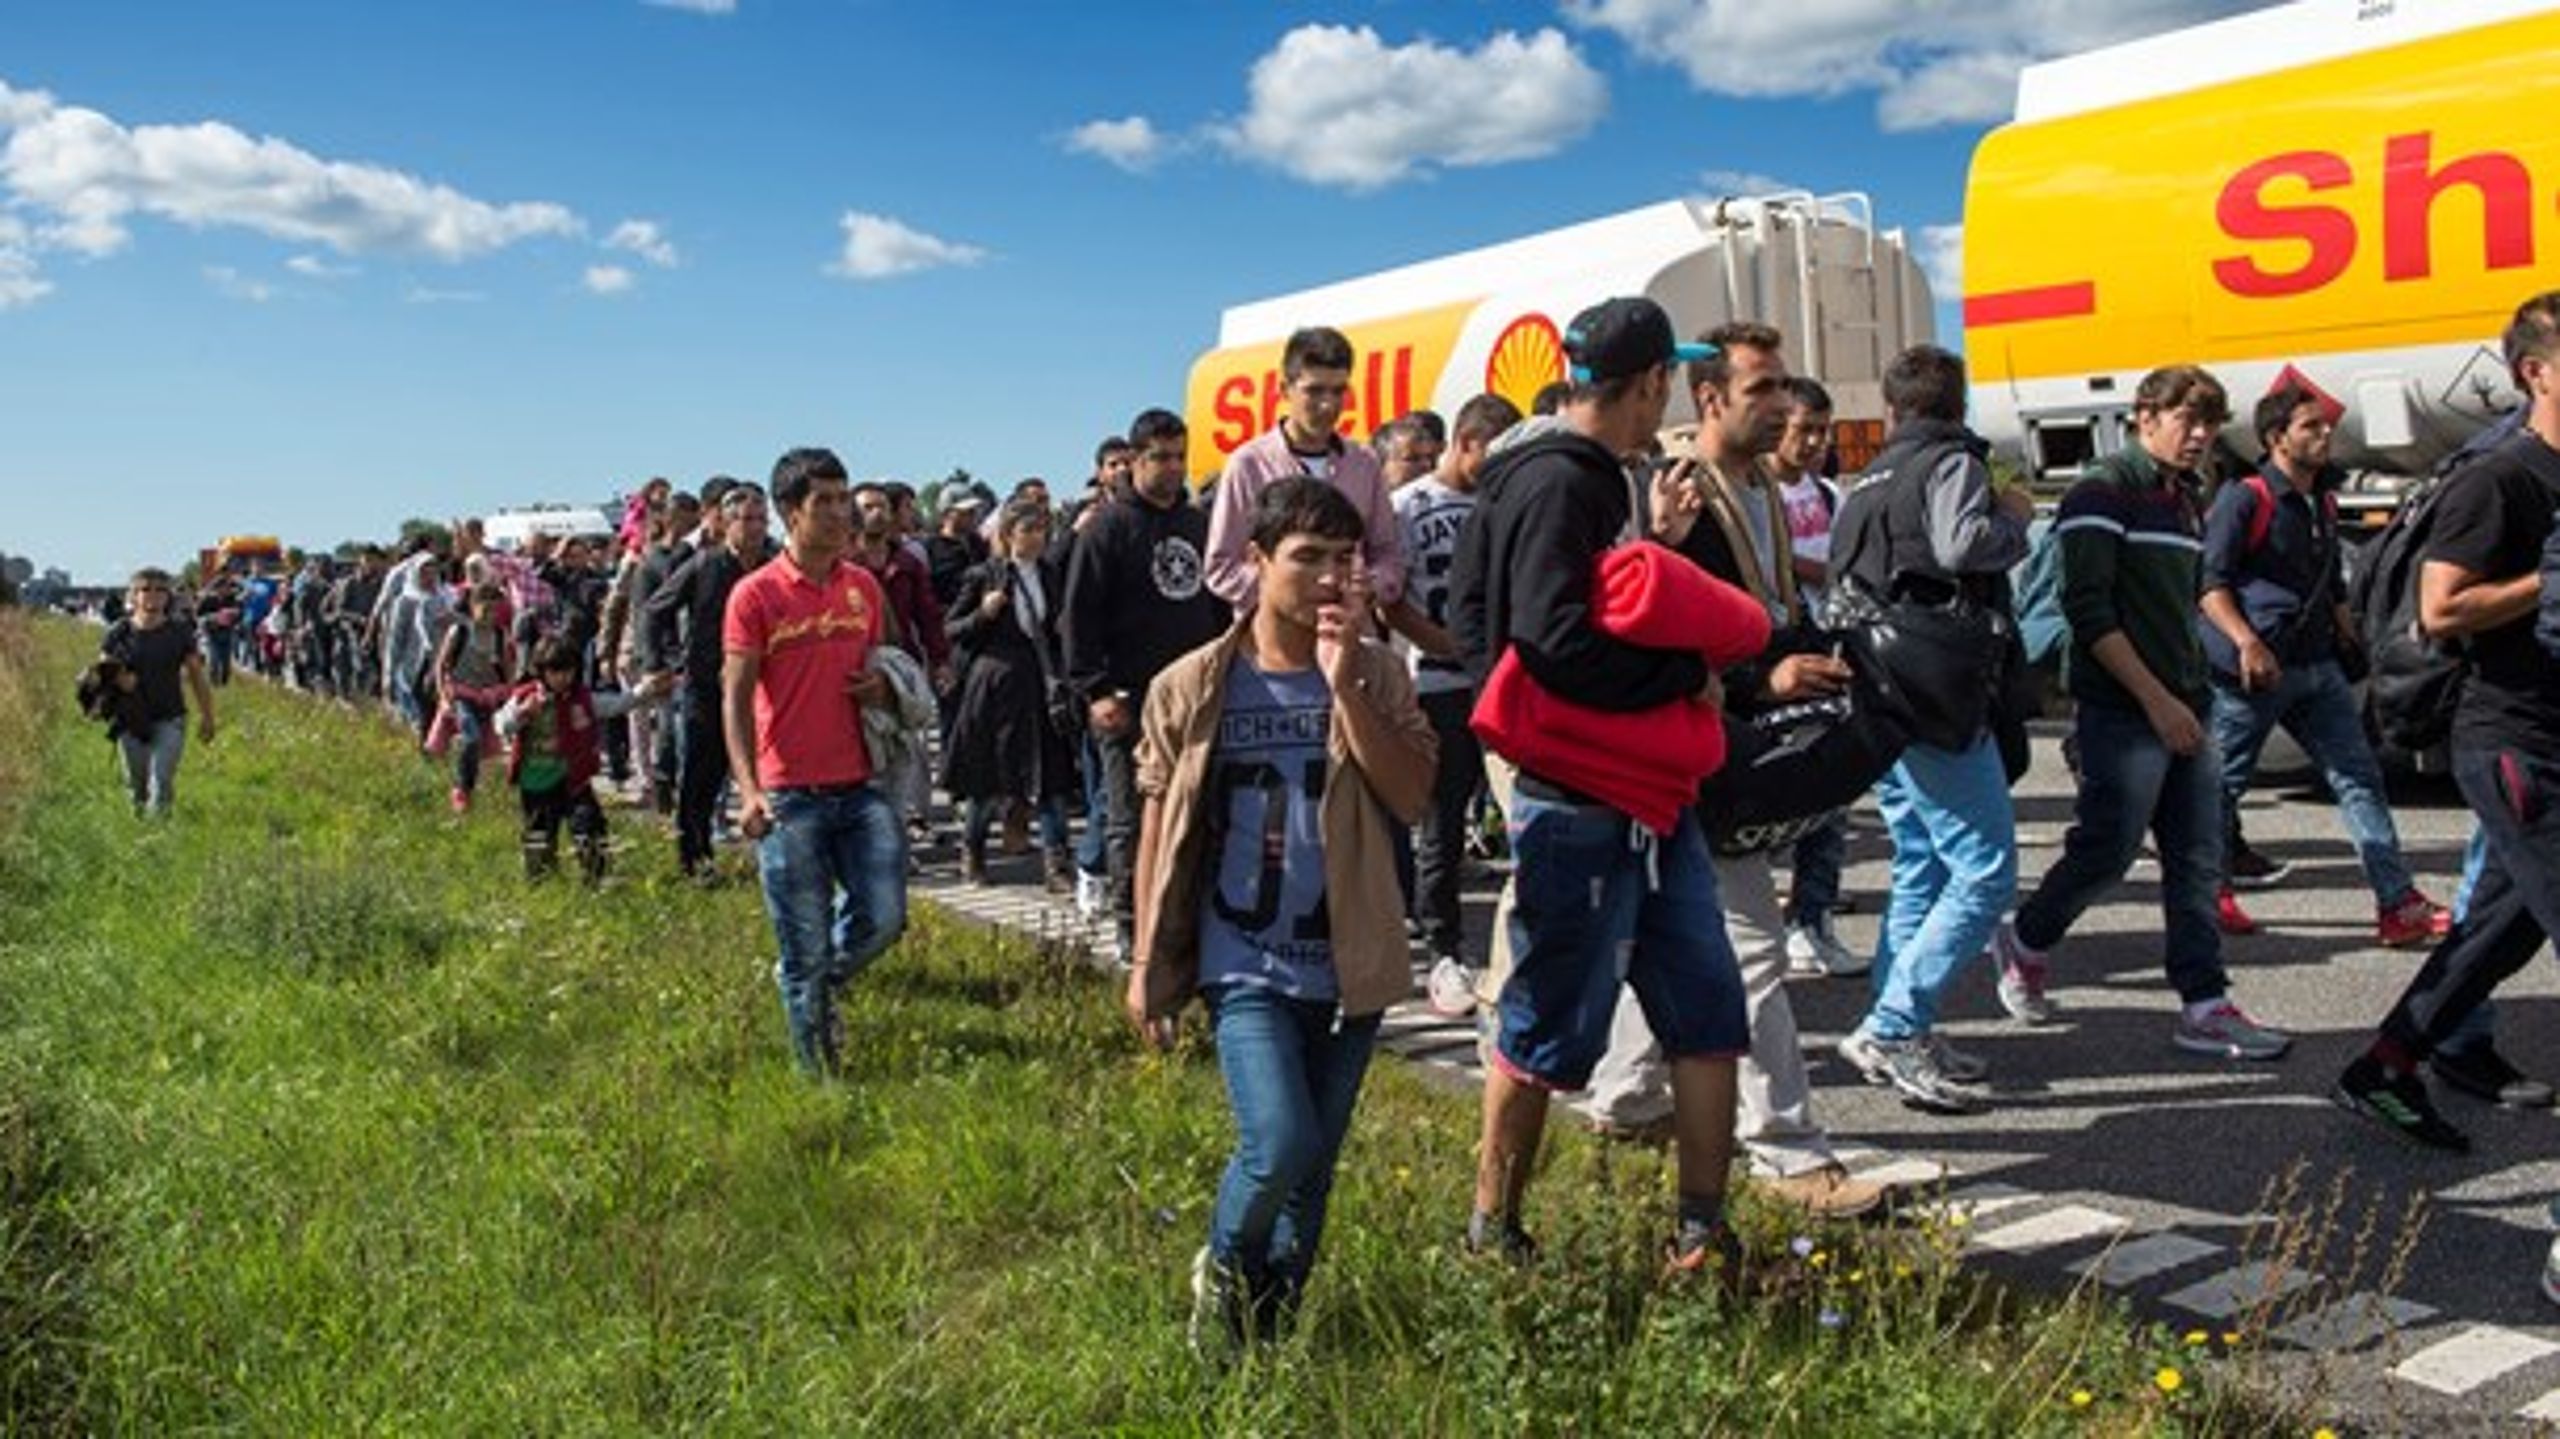 Det skal være slut med flygtninge og migranter på de danske motorveje, som vi så hen over sommeren 2015, mener regeringen.